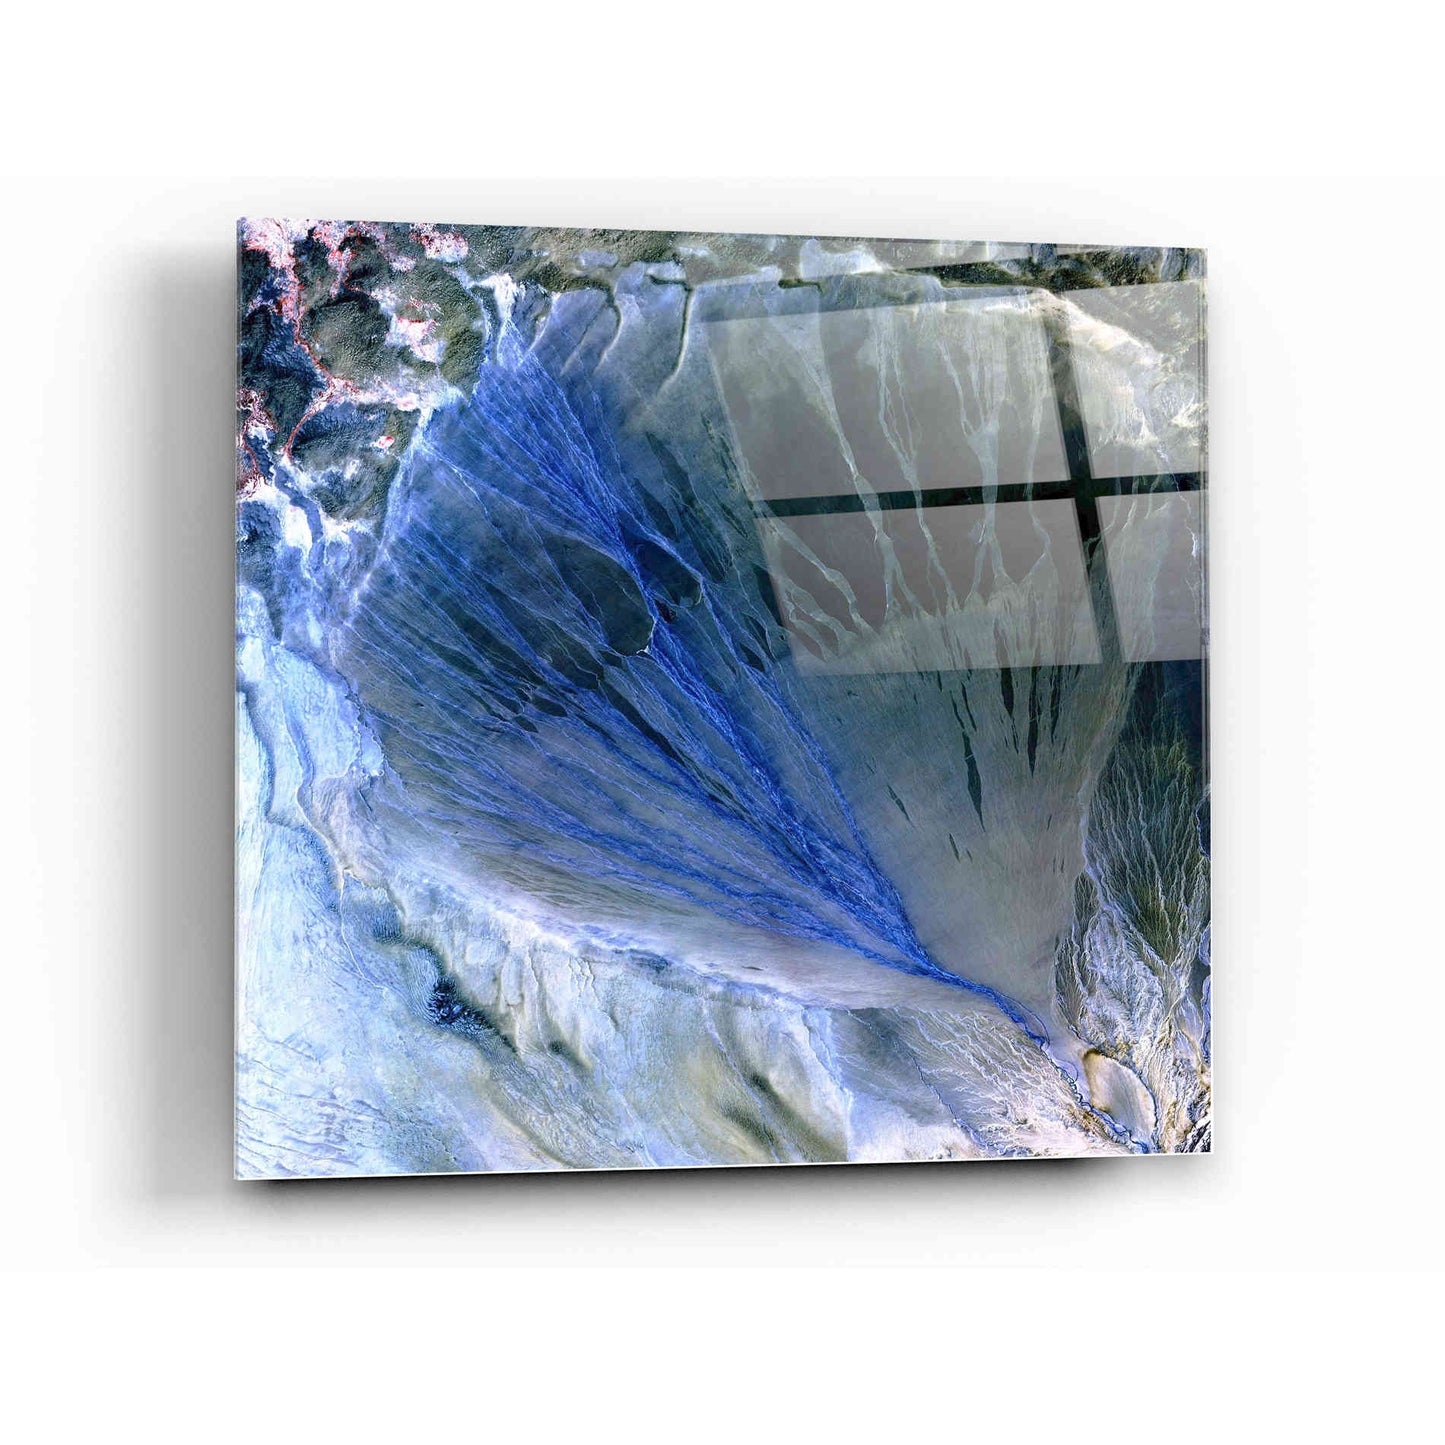 Epic Art 'Earth As Art: Alluvial Fan' Acrylic Glass Wall Art,12x12